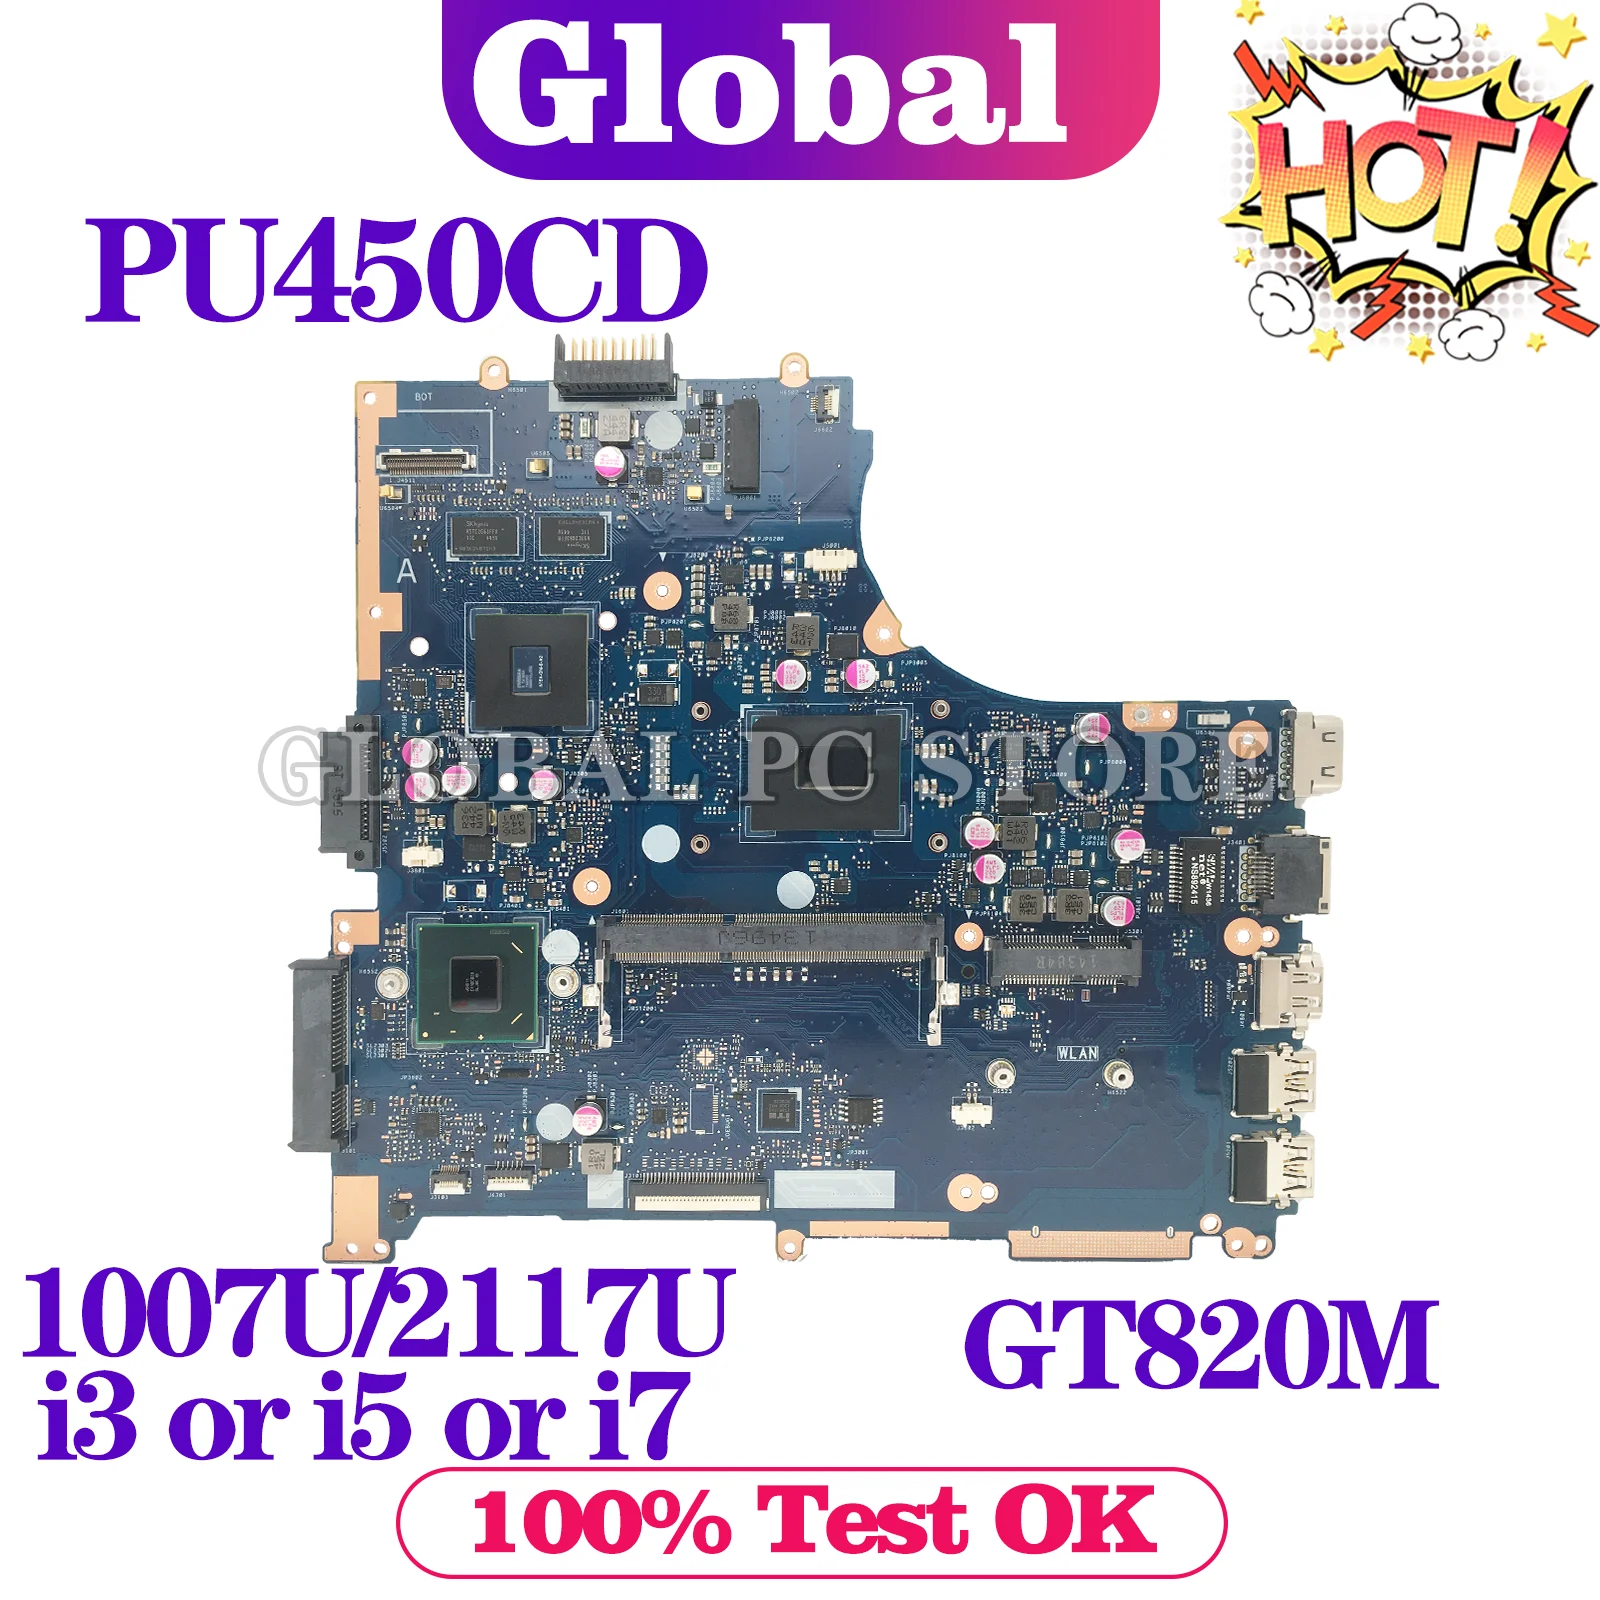 KEFU Mainboard For ASUS PU450CD PU450C PU450 Laptop Motherboard 1007U/2117U i3 i5 i7 3th Gen GT820M